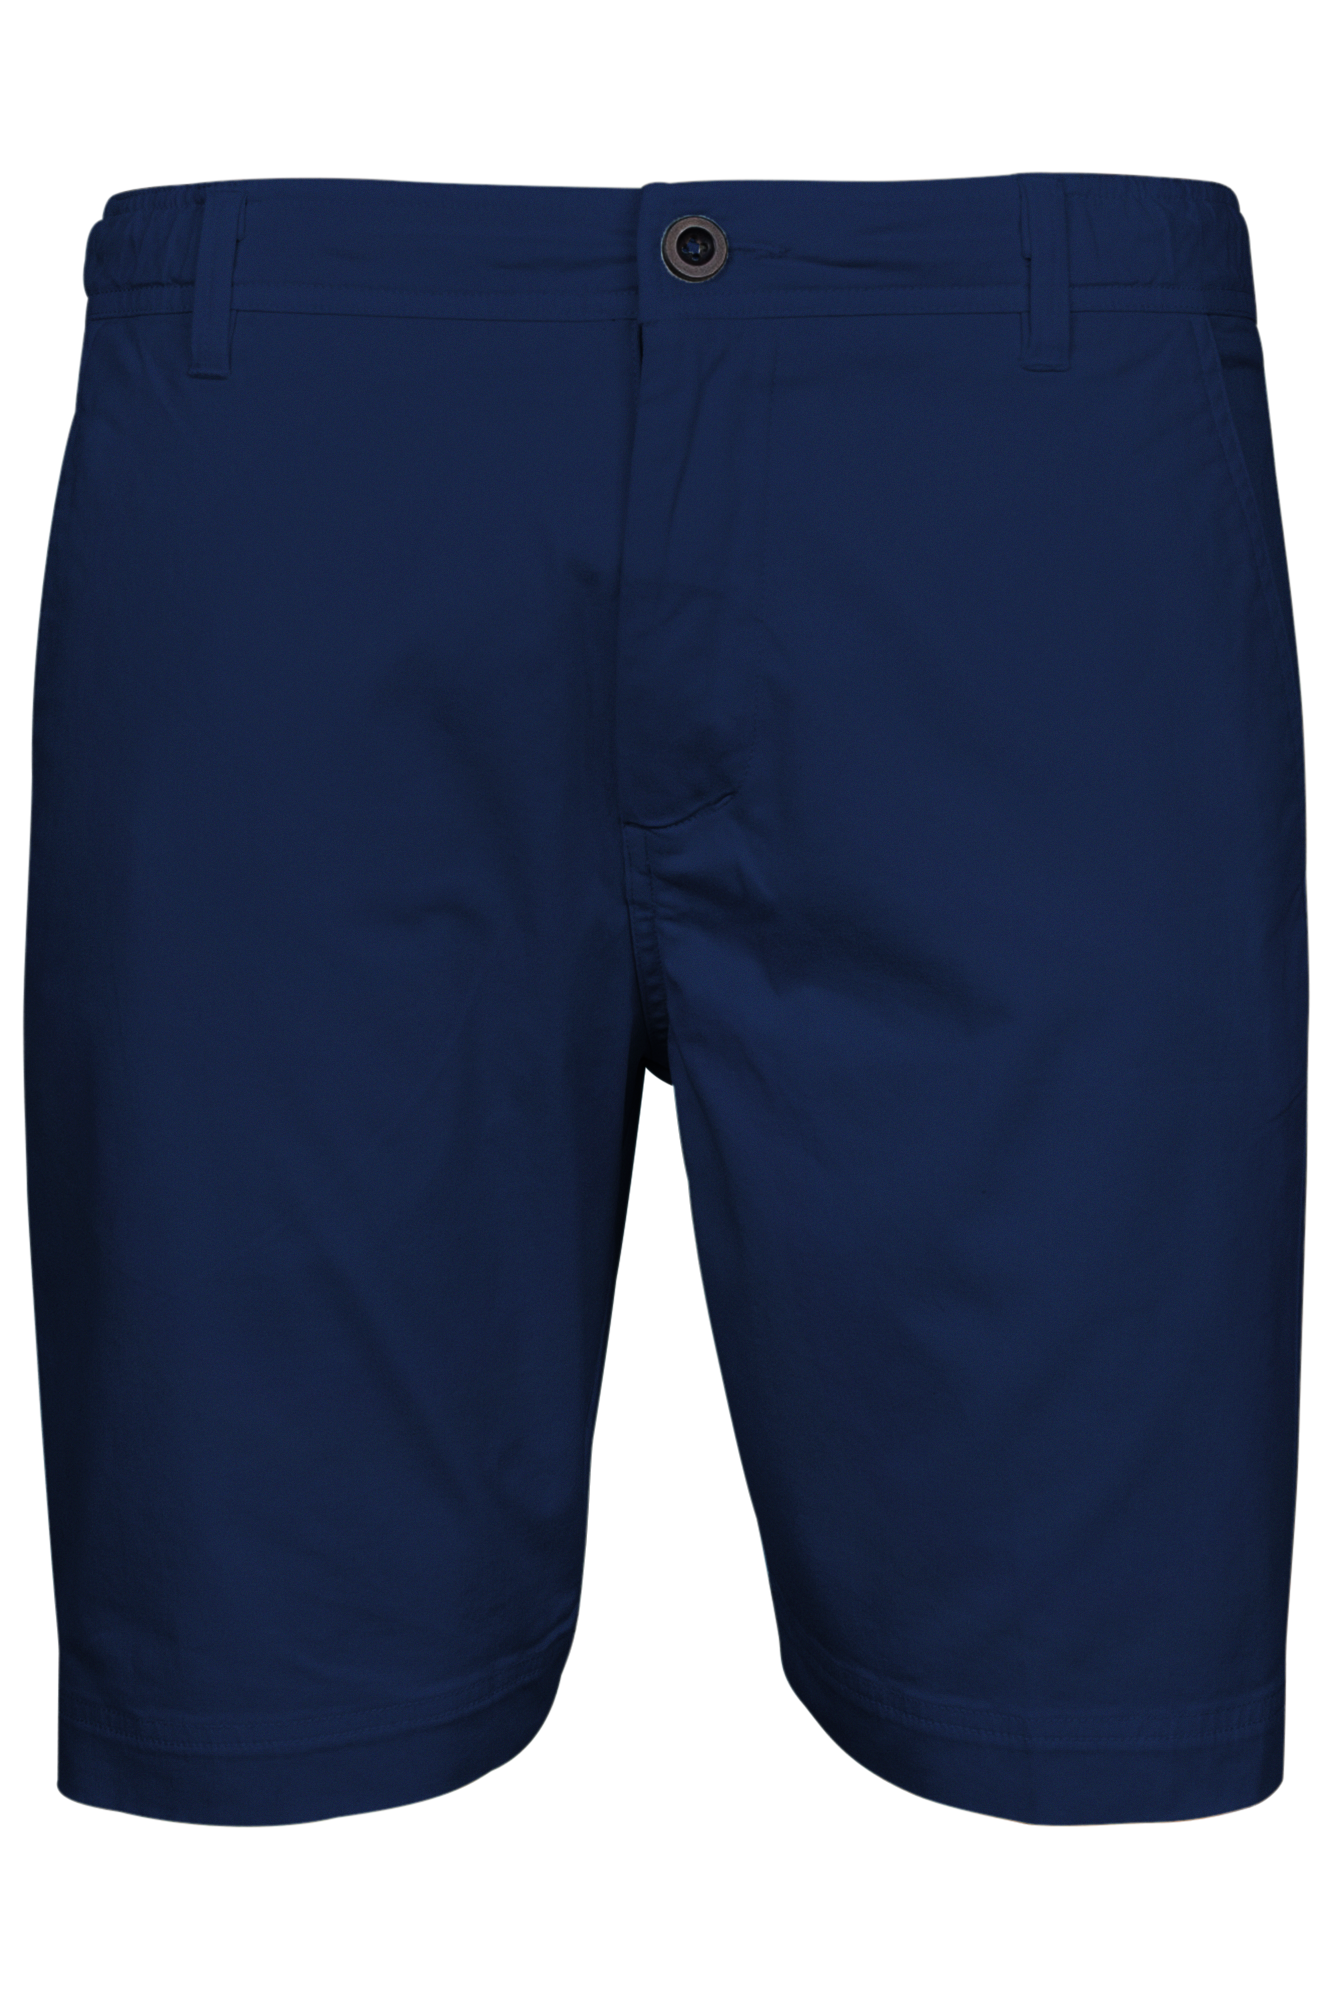 Porter shorts in navy by Giordano